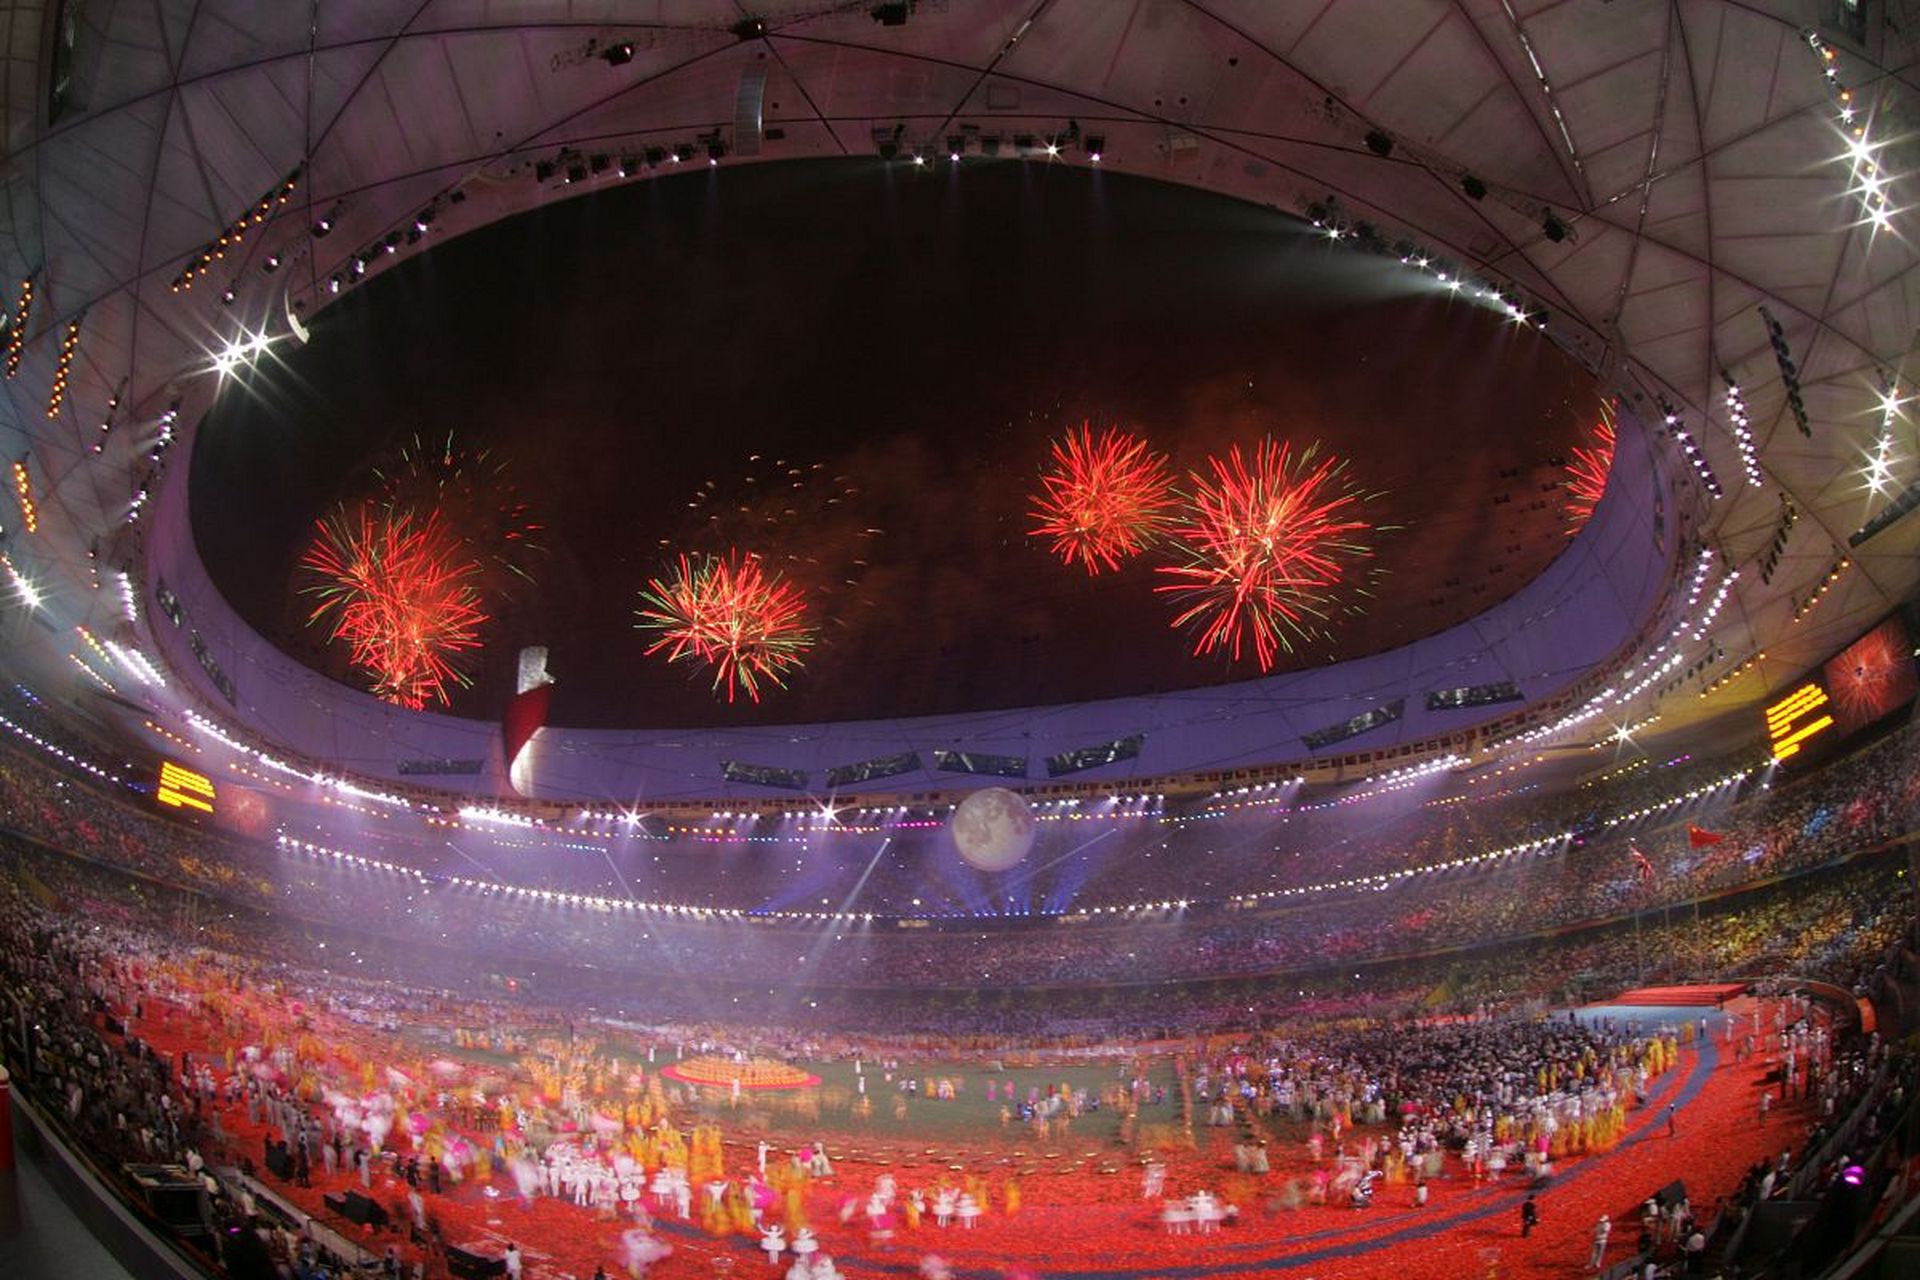 北京奥运会开幕:奥运精神的辉煌展示  2008年8月8日,北京奥运会在庄严